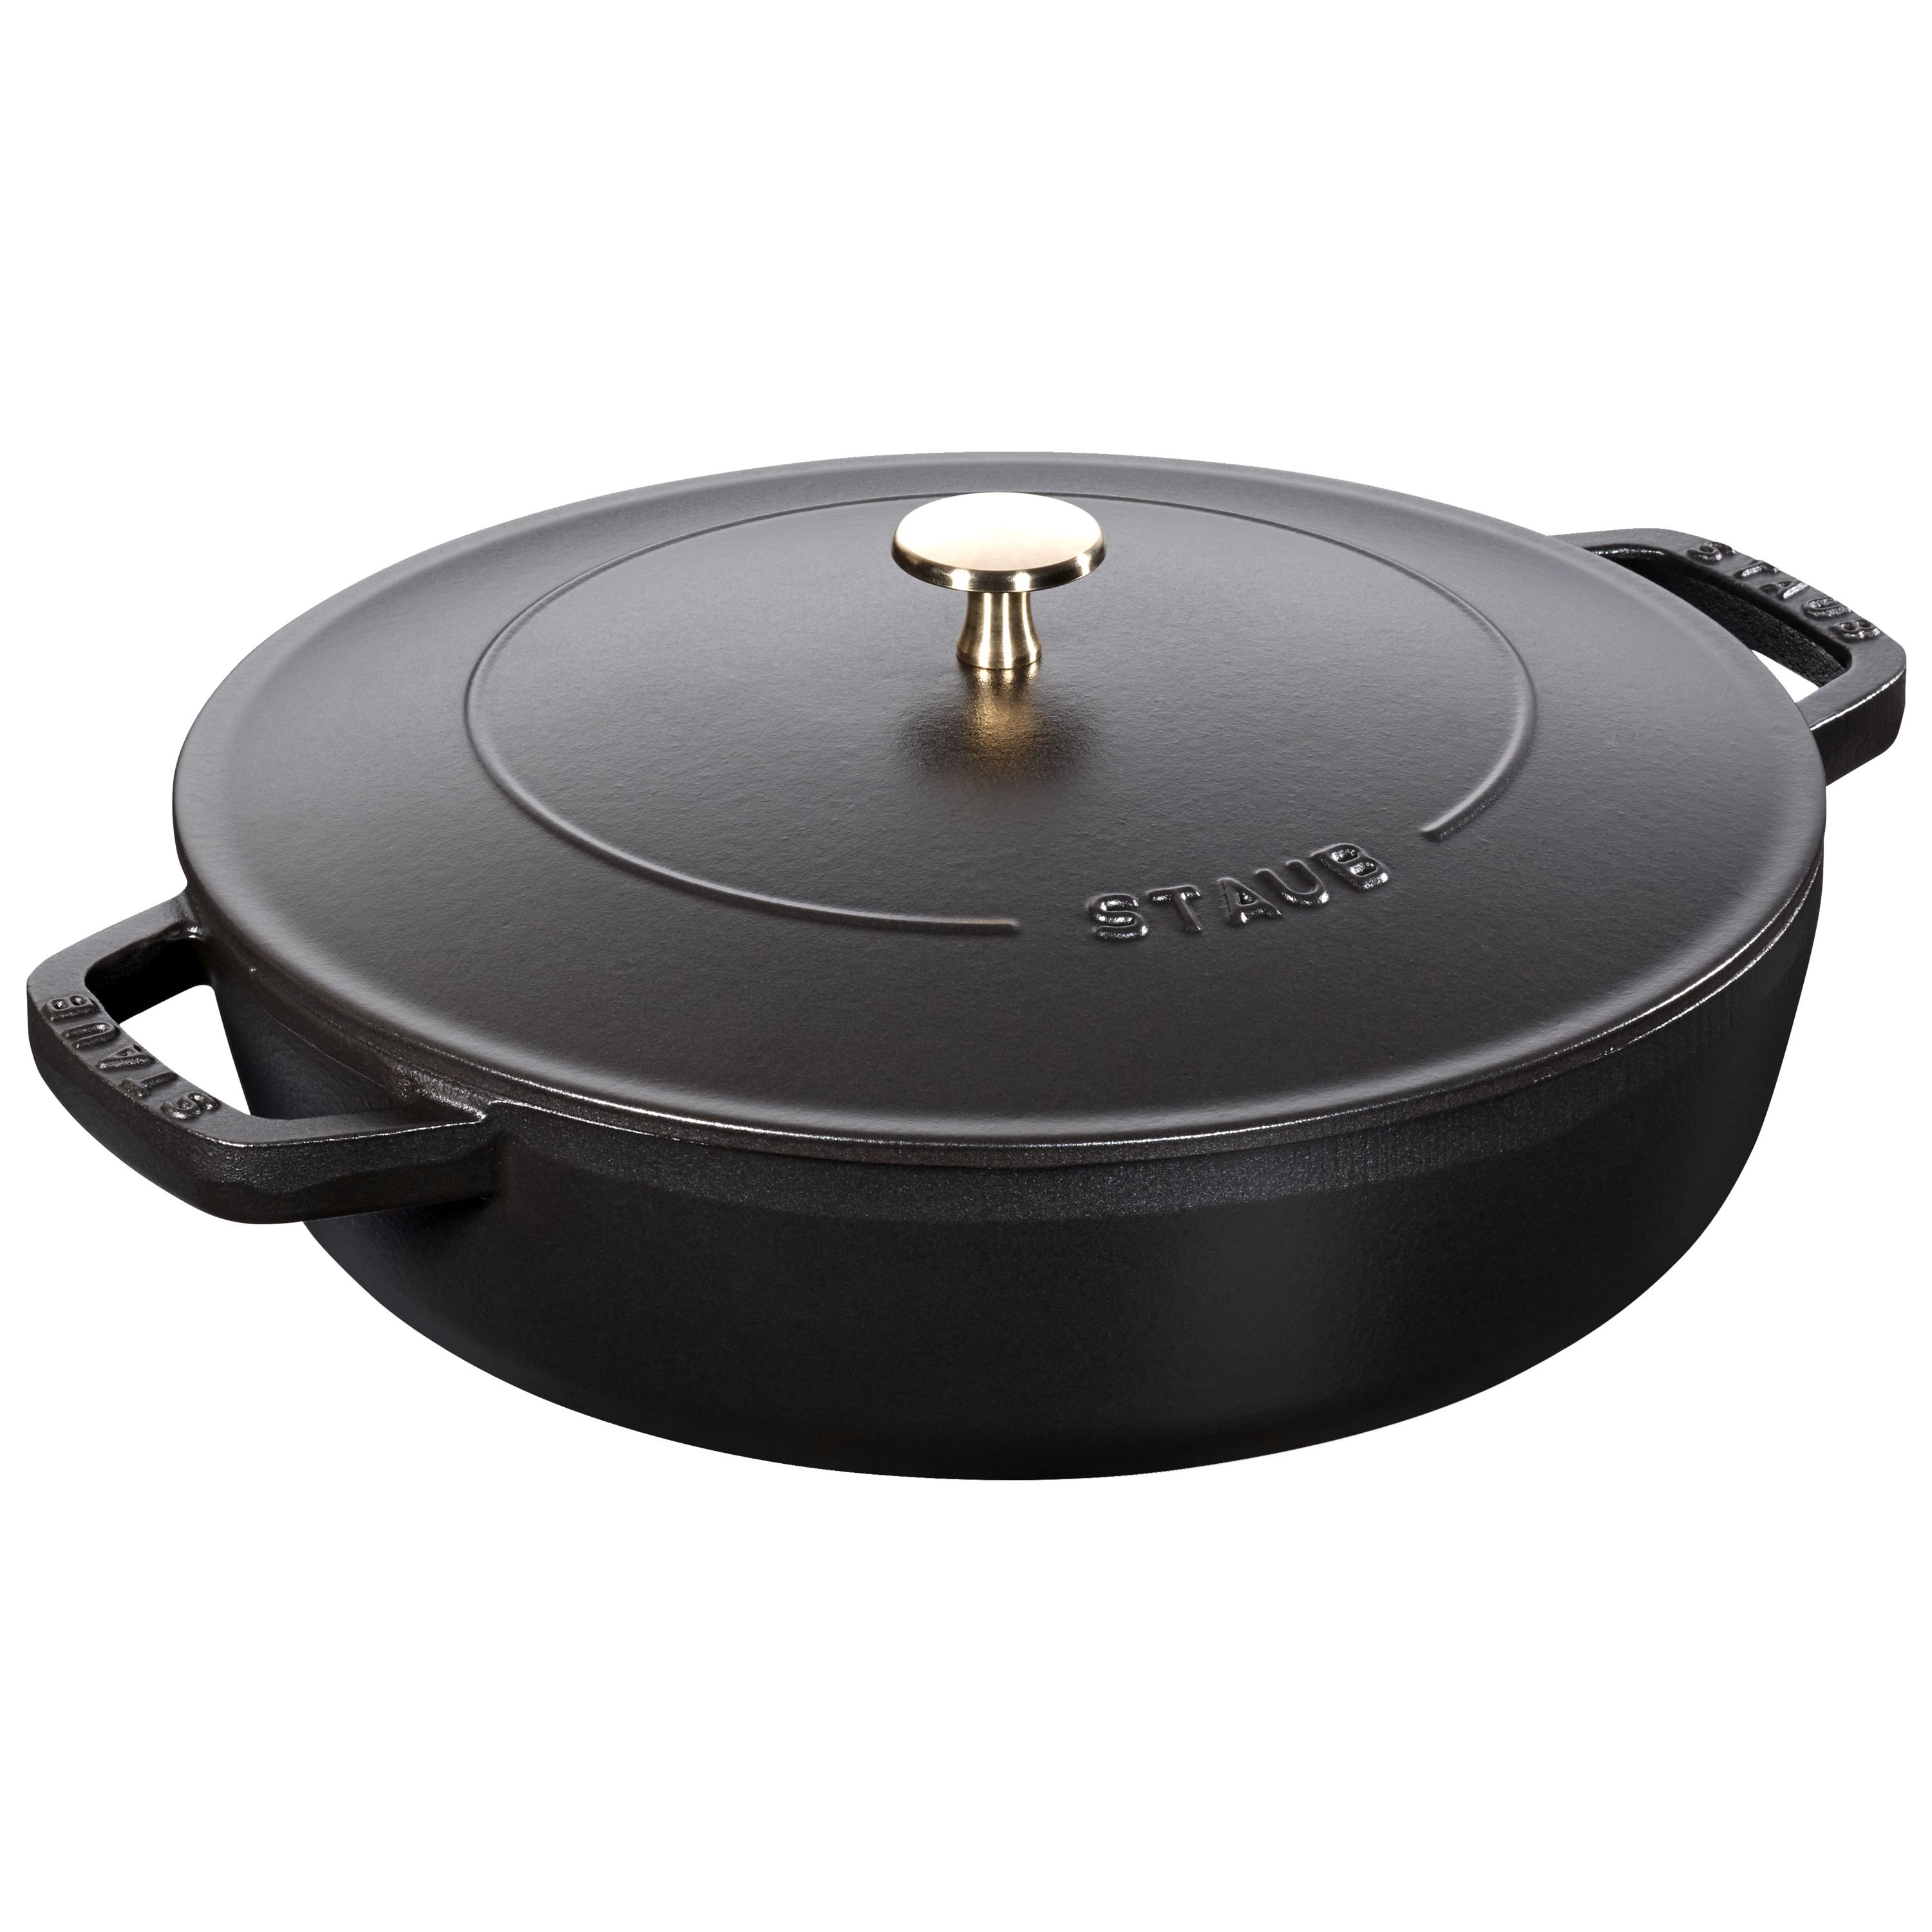 ブレイザーソテーパン 28cm鍋 選べるカラー ホーロー SAUTE PAN